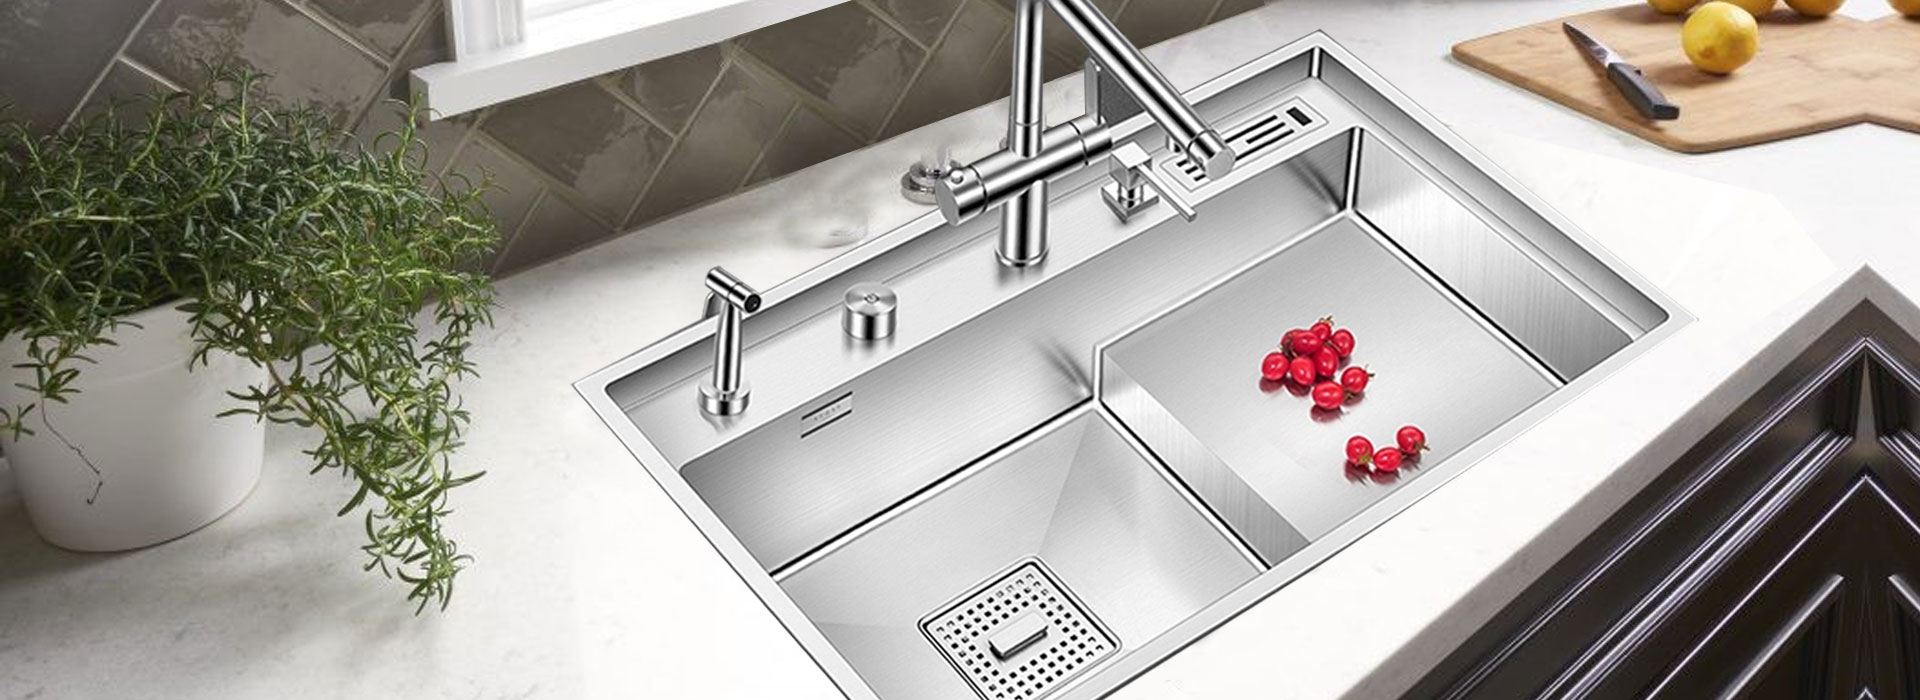 bharat steel kitchen sink manufacturers delhi